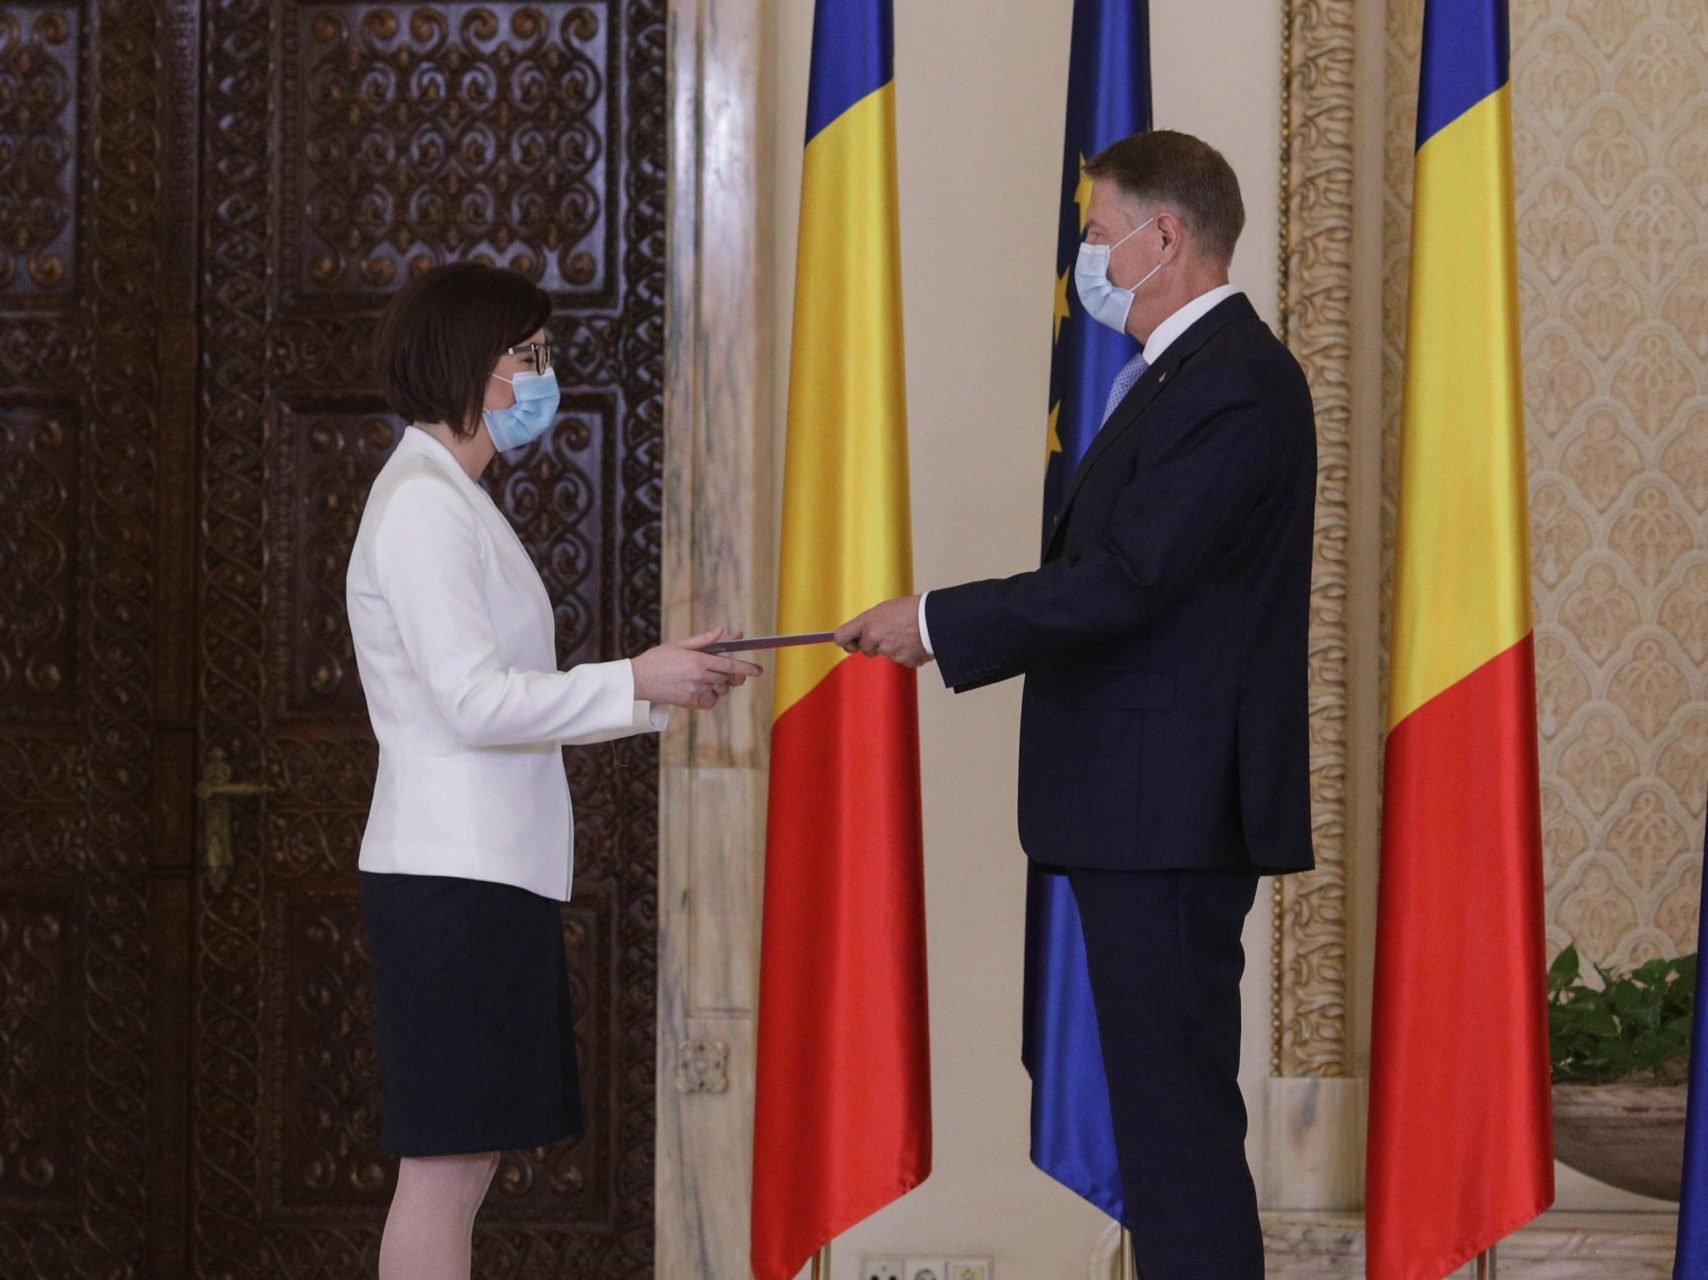 Ceremonie la Palatul Cotroceni. Ioana Mihăilă, învestită în funcția de ministru al Sănătății